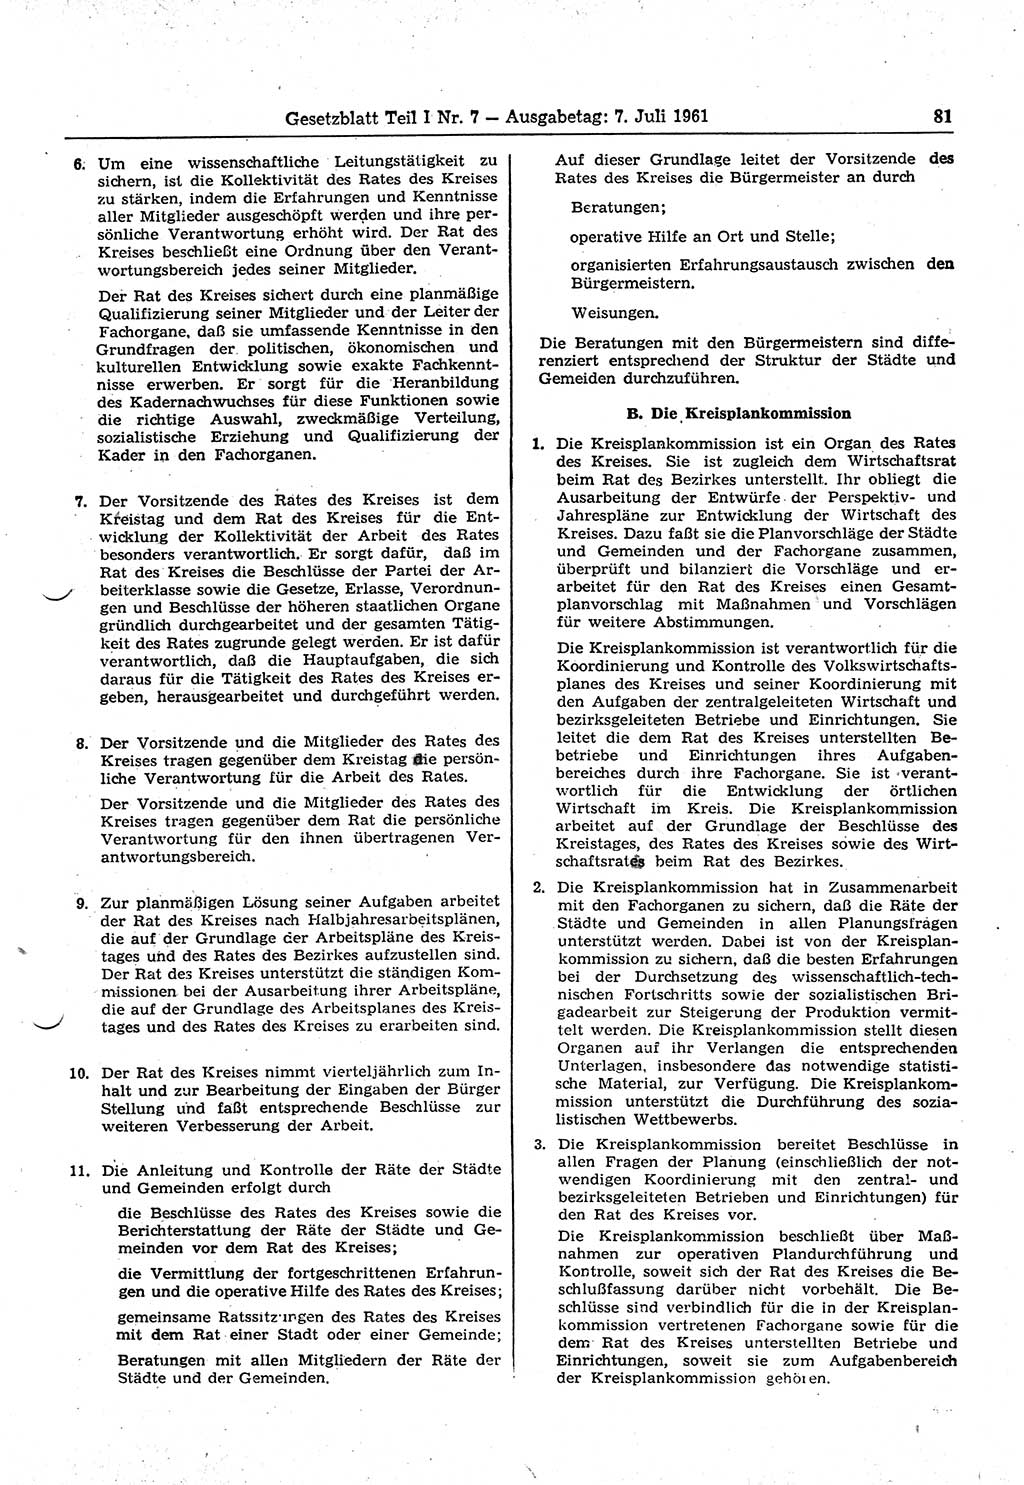 Gesetzblatt (GBl.) der Deutschen Demokratischen Republik (DDR) Teil Ⅰ 1961, Seite 81 (GBl. DDR Ⅰ 1961, S. 81)